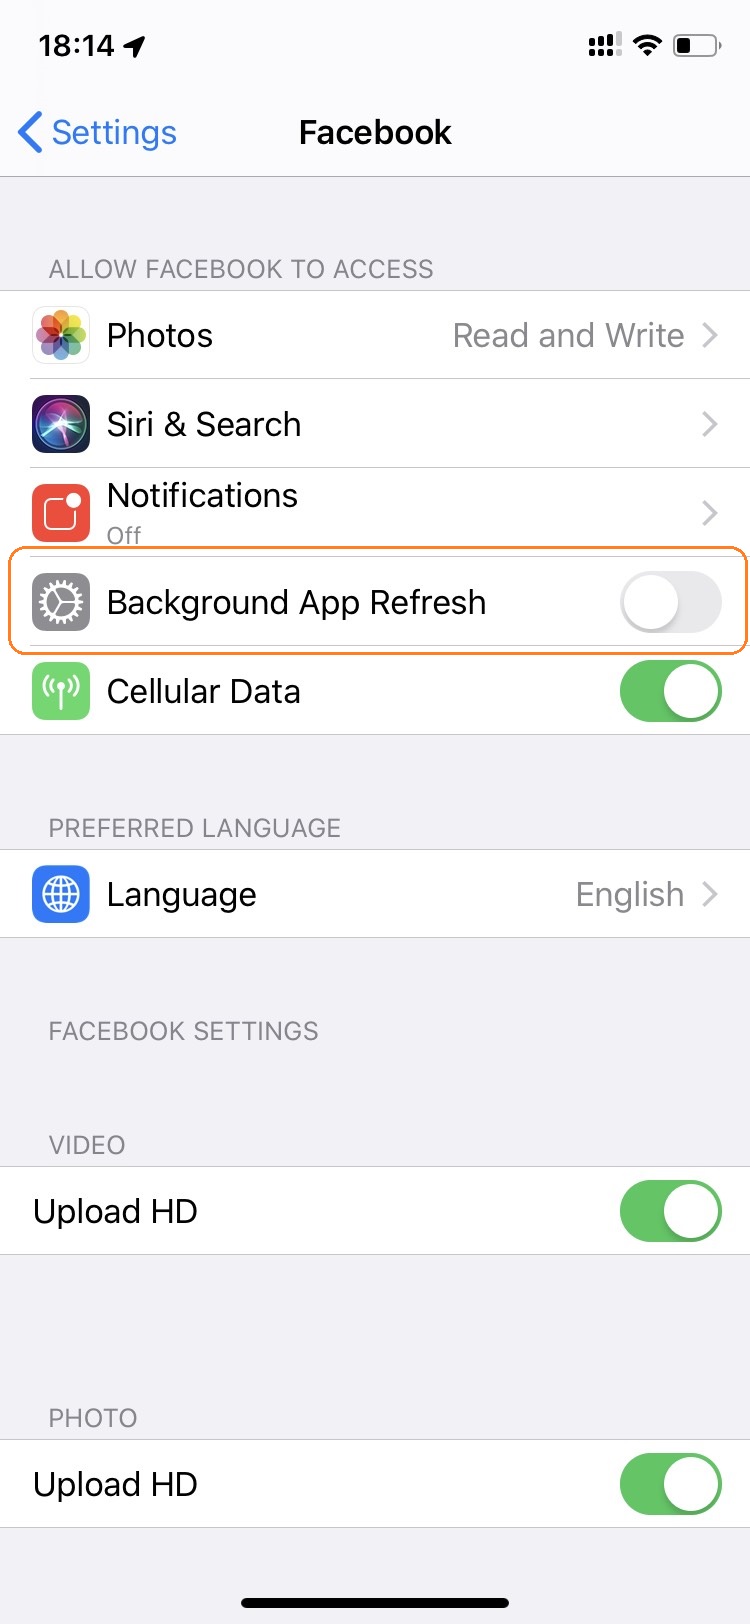 Để giảm thiểu việc hao pin khi sử dụng dữ liệu trên thiết bị iOS, việc tắt Background App Refresh là cần thiết. Với kiến thức iOS cơ bản, bạn có thể dễ dàng thực hiện những thay đổi này và tiết kiệm pin đáng kể mà vẫn có thể sử dụng thiết bị của mình một cách thông minh.